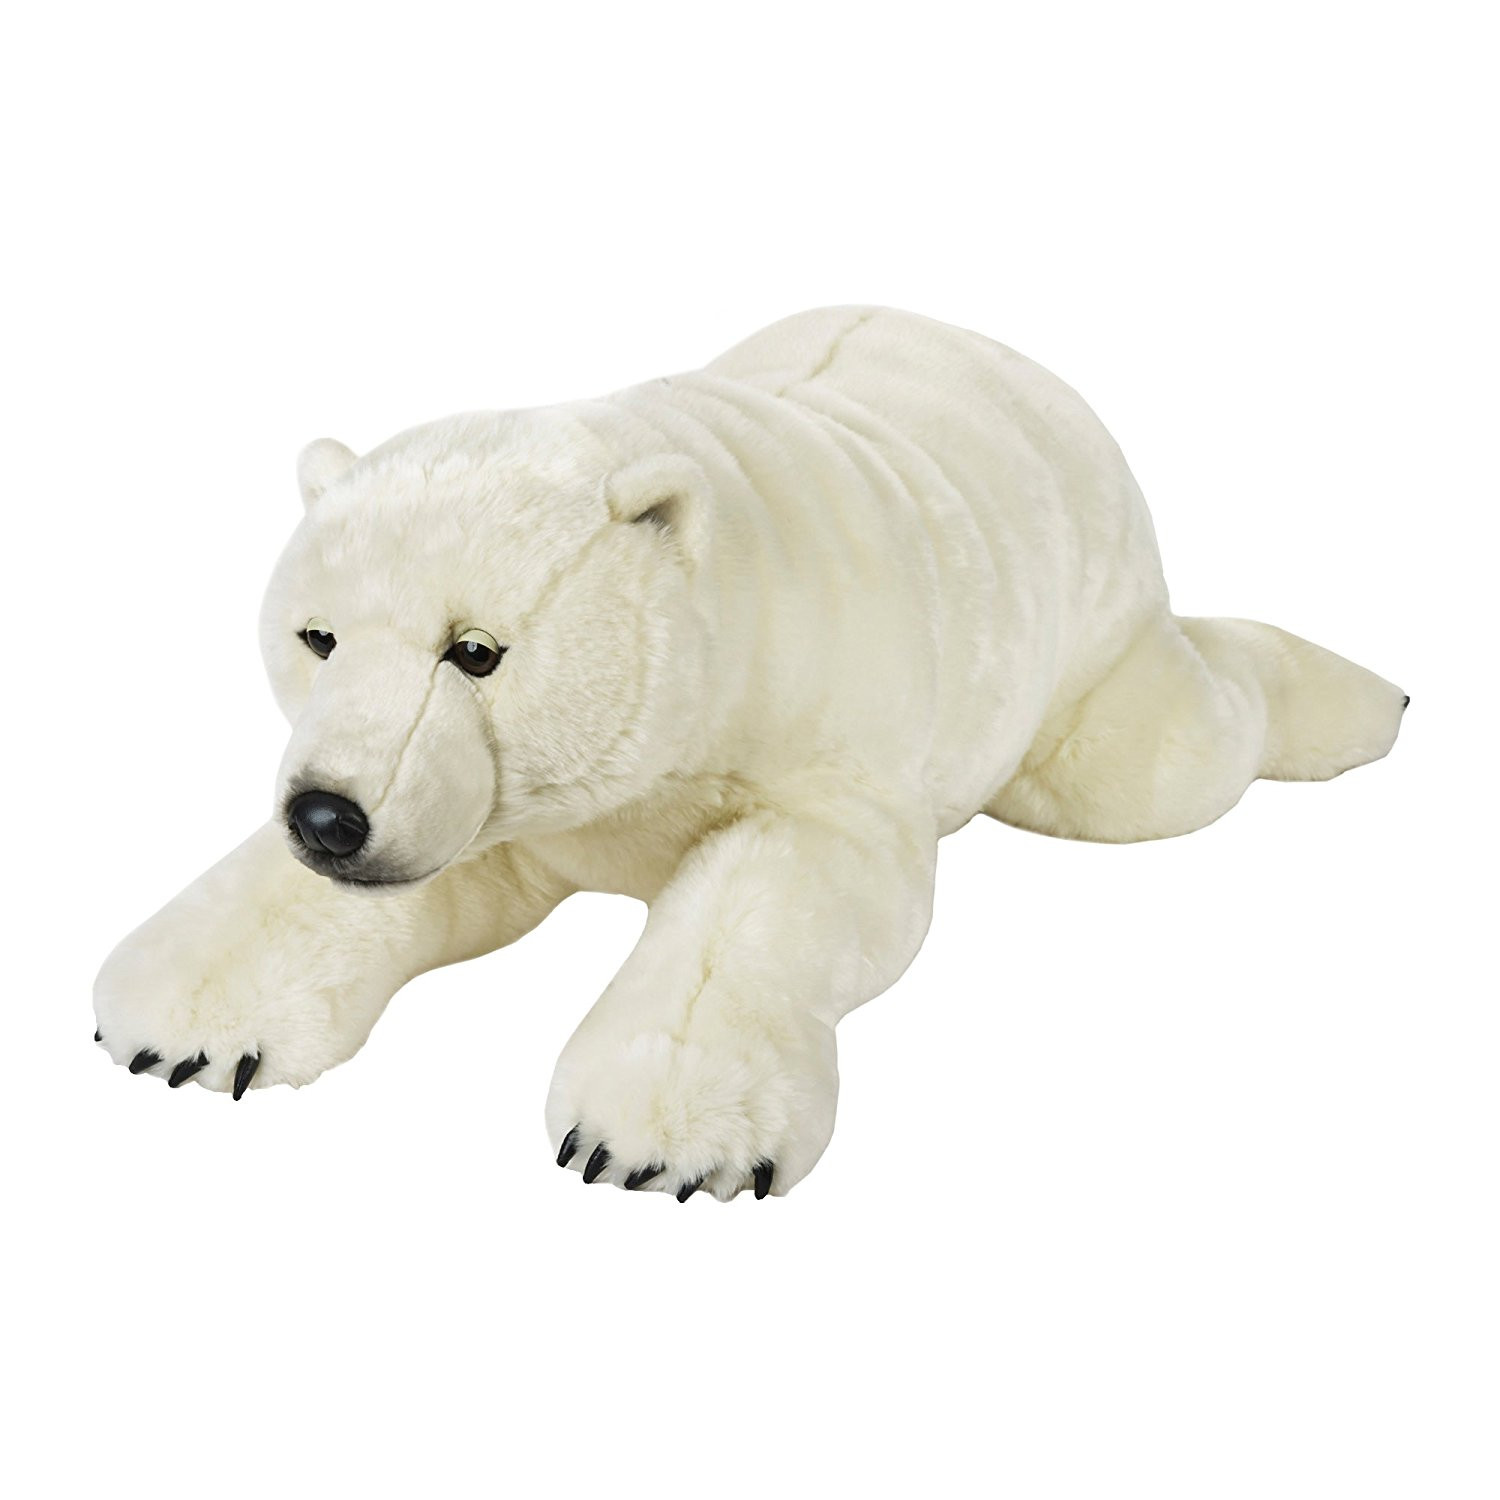 Peluche Orso Polare Gigante 118 Cm National Geographic Venturelli PS 04139 Pelusciamo Store Marchirolo